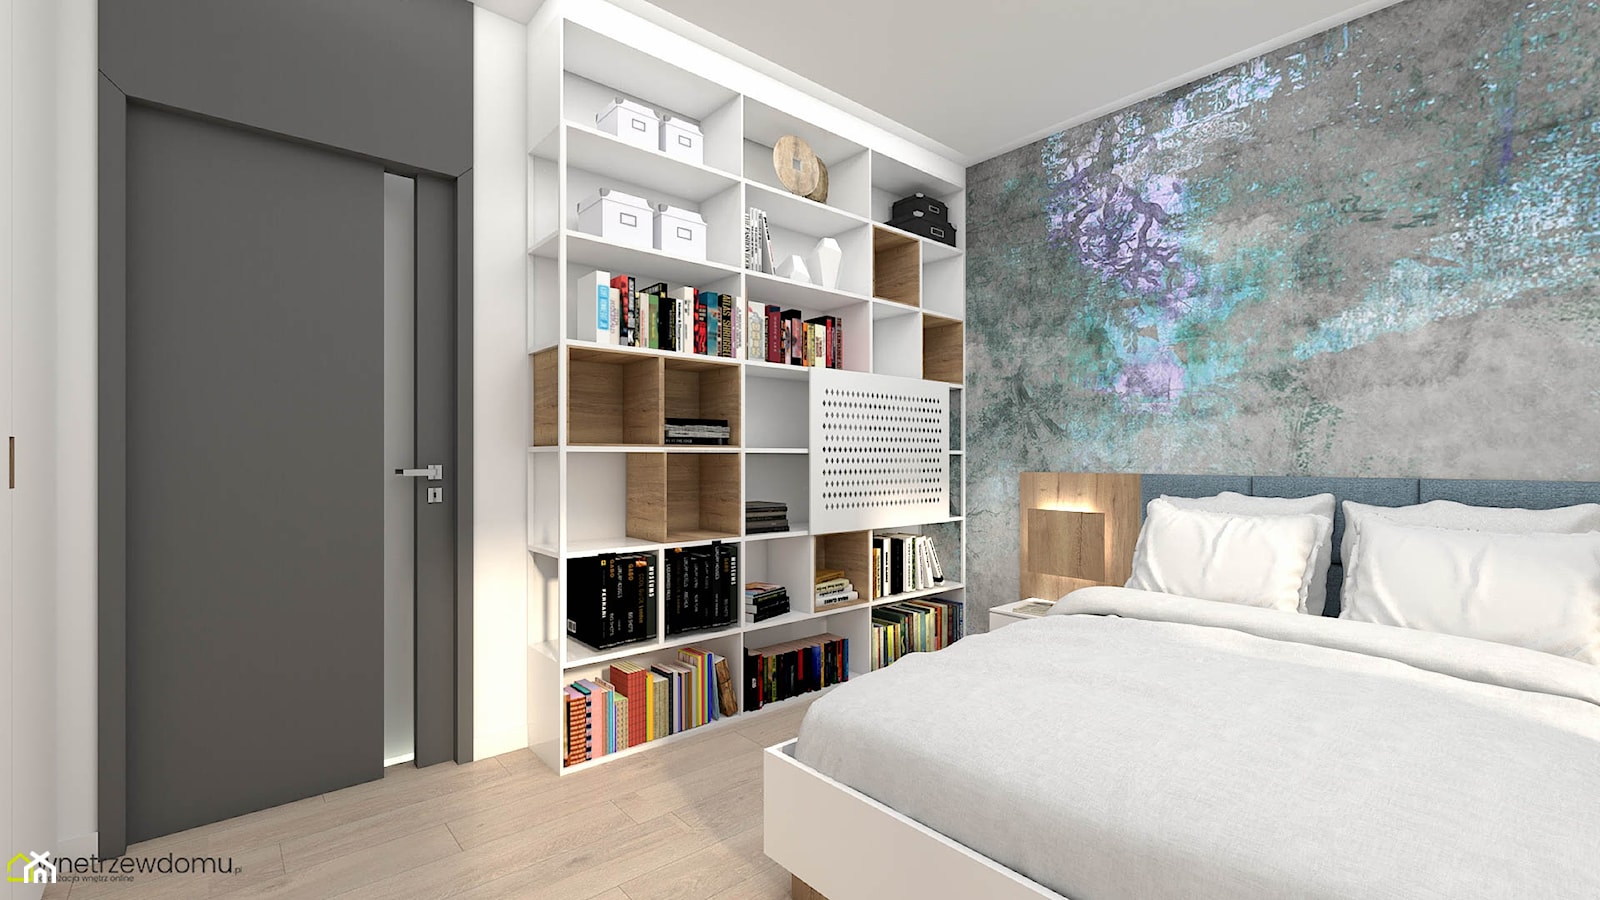 Jasna, nowoczesna sypialnia z dużą zabudową meblową - zdjęcie od wnetrzewdomu - Homebook